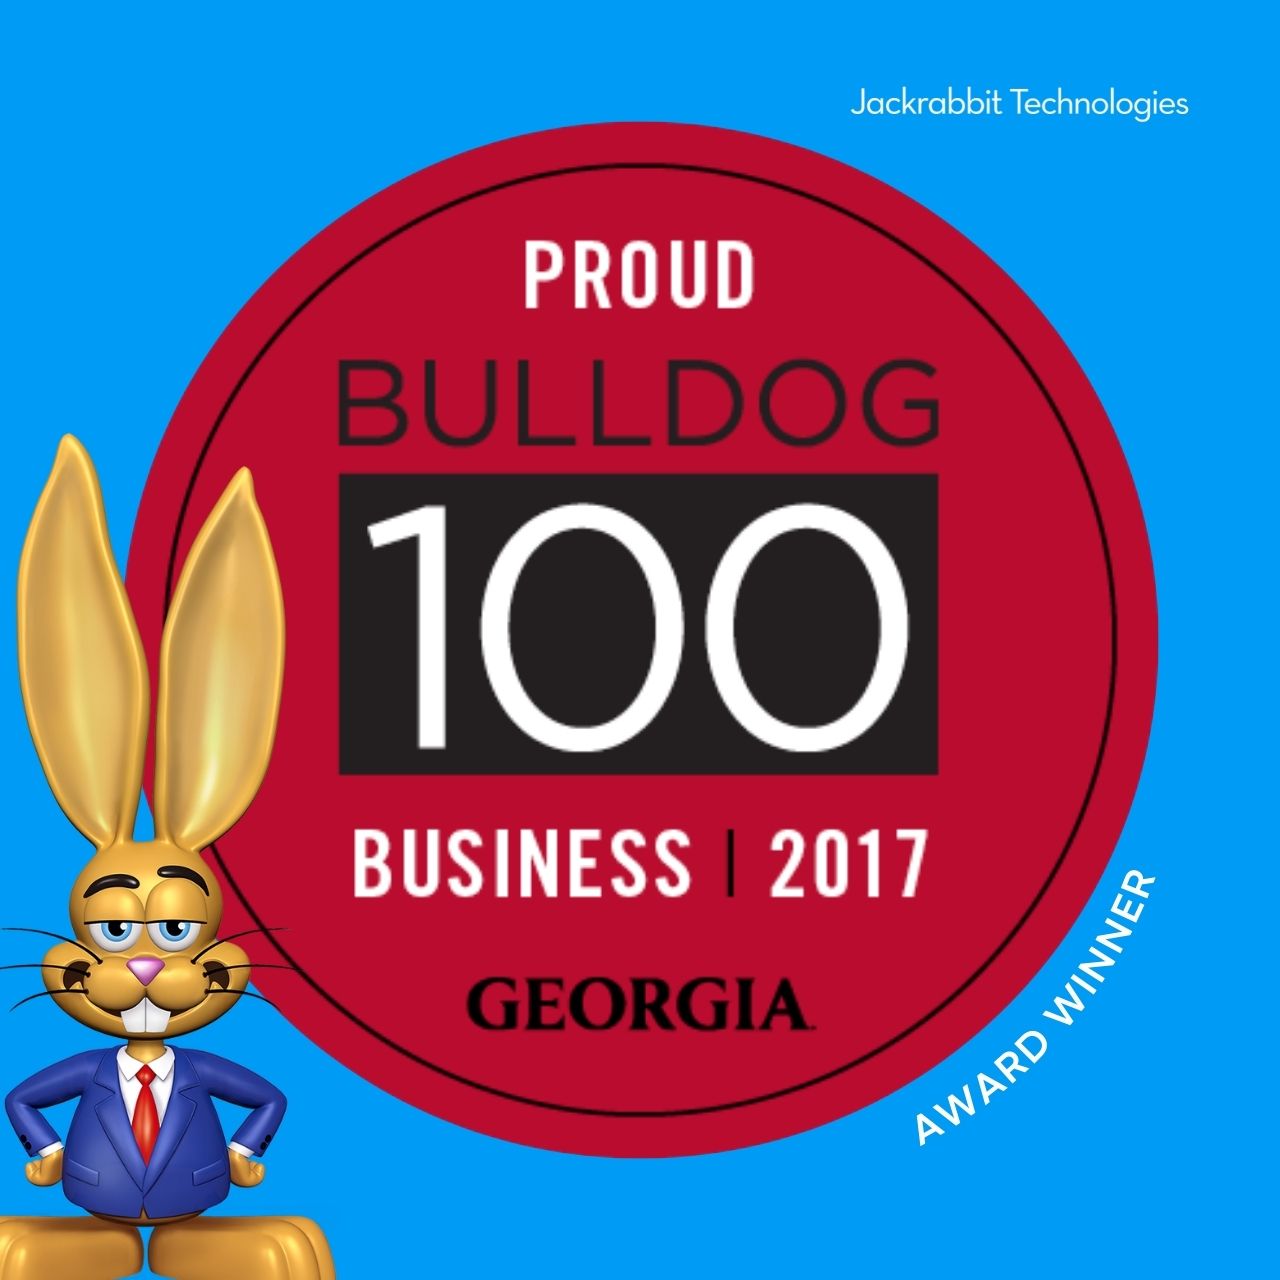 jackrabbit makes uga bulldog 100 for 7th year